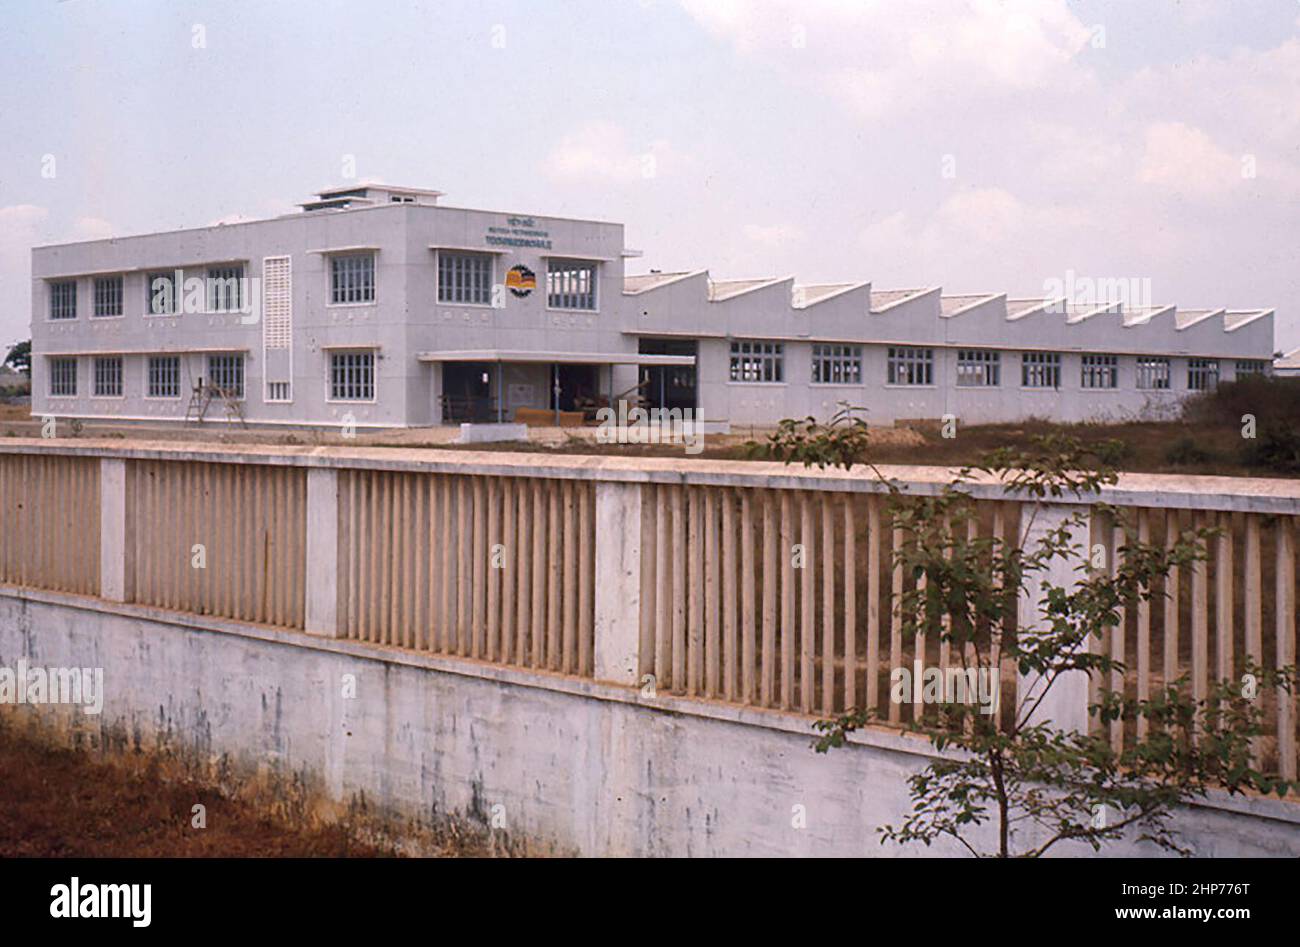 Si tratta di una scuola donata per meccanici e machinisti dai tedeschi occidentali che si trovano nella periferia di Saigon. La Germania occidentale prevede di equipaggiare, fornire e gestire la scuola come parte del loro impegno per il Vietnam - Marzo 1966 - PD foto gentilmente concessa da USMC Foto Stock